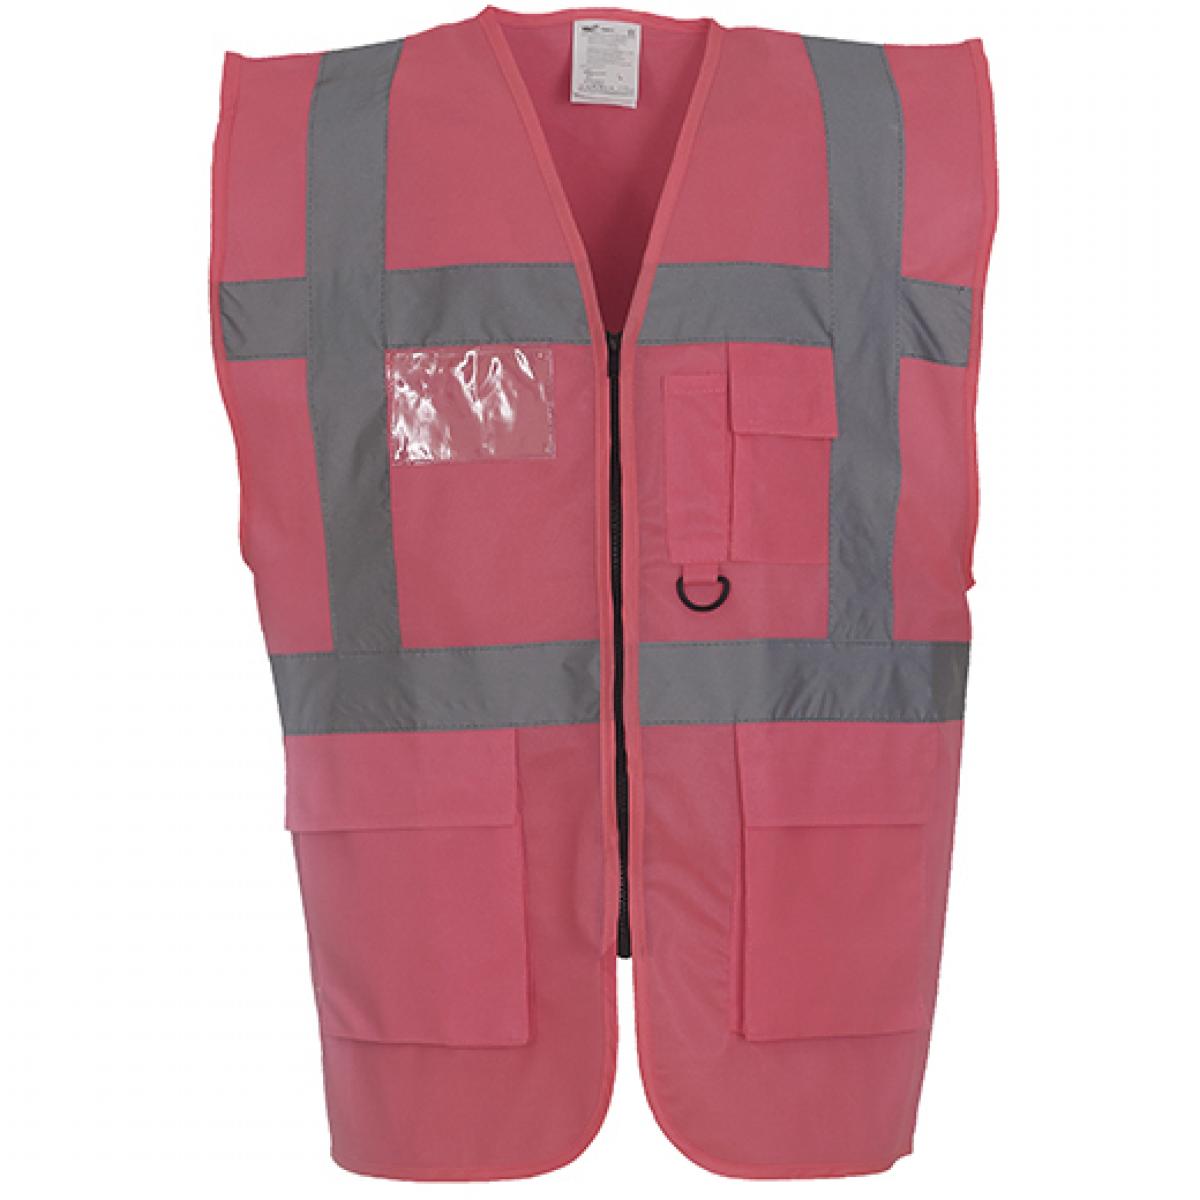 Hersteller: YOKO Herstellernummer: HVW801 Artikelbezeichnung: Herren Multi-Functional Executive Waistcoat Farbe: Pink